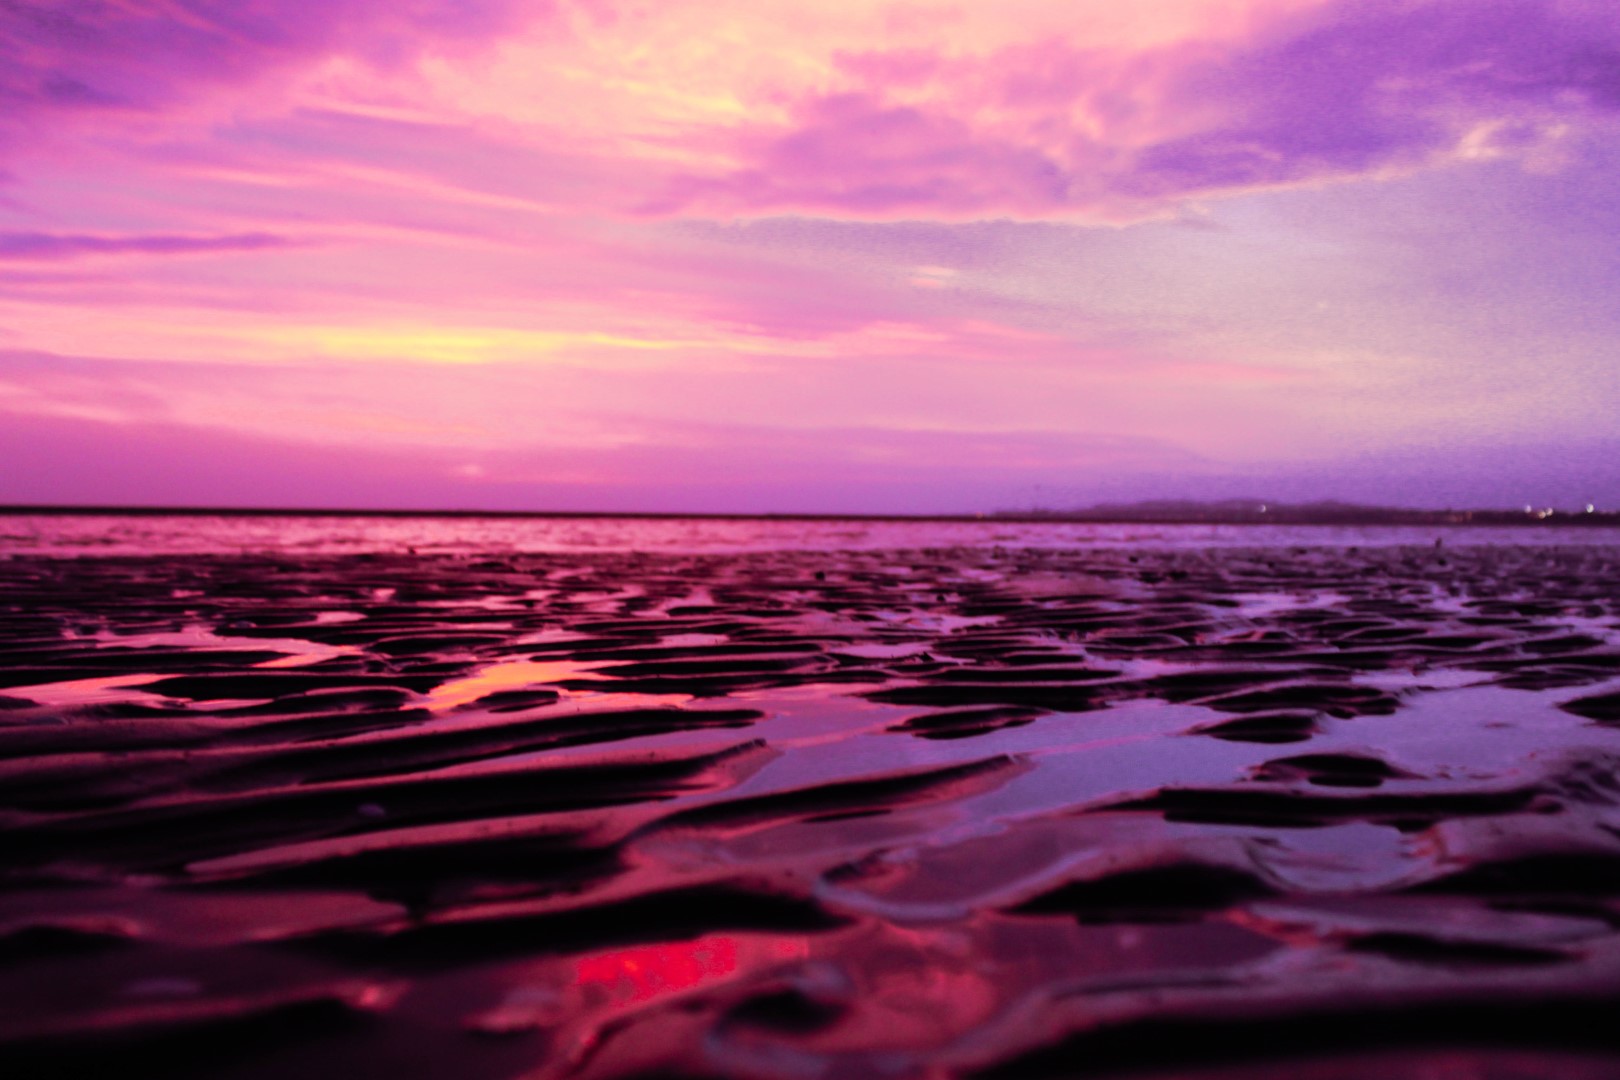 Pink sunrise at a beach